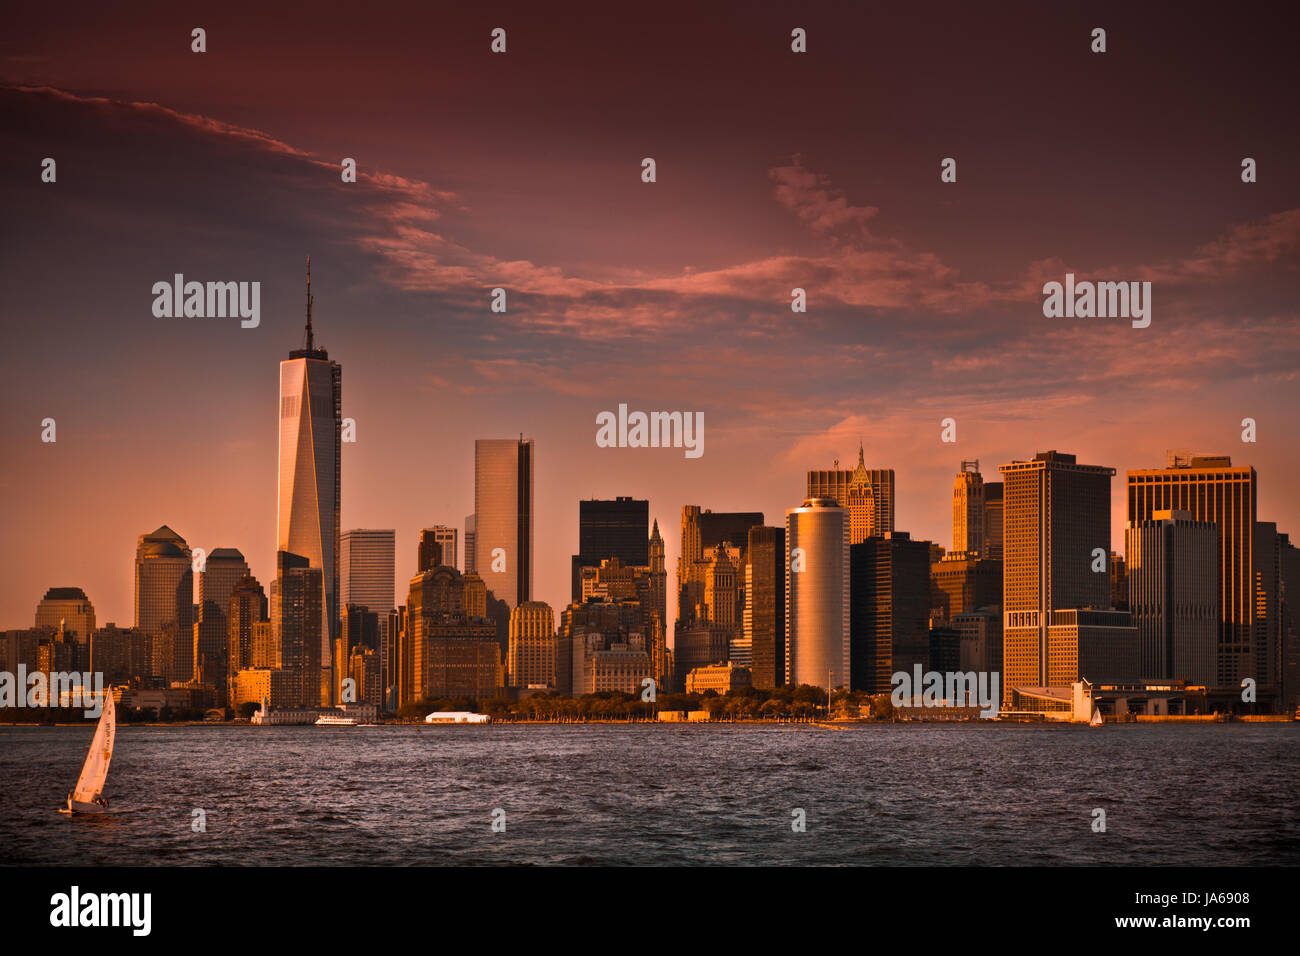 metro, blue, buildings, city, town, metropolis, sunset, usa, purple, growth, Stock Photo